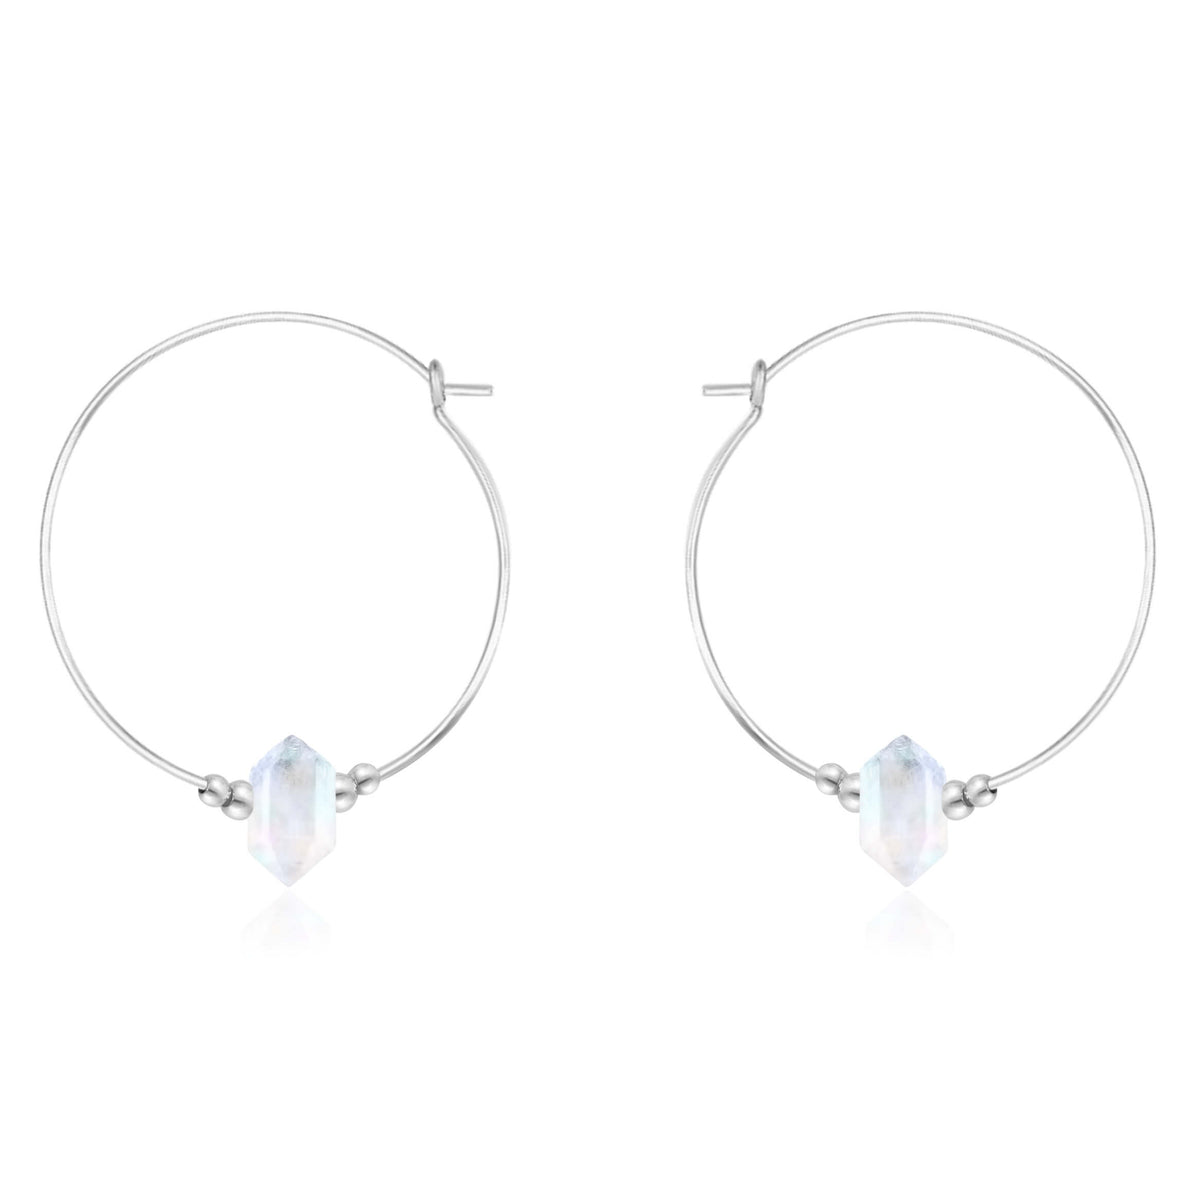 Large Double Terminated Crystal Hoop Earrings - Rainbow Moonstone - Sterling Silver - Luna Tide Handmade Jewellery